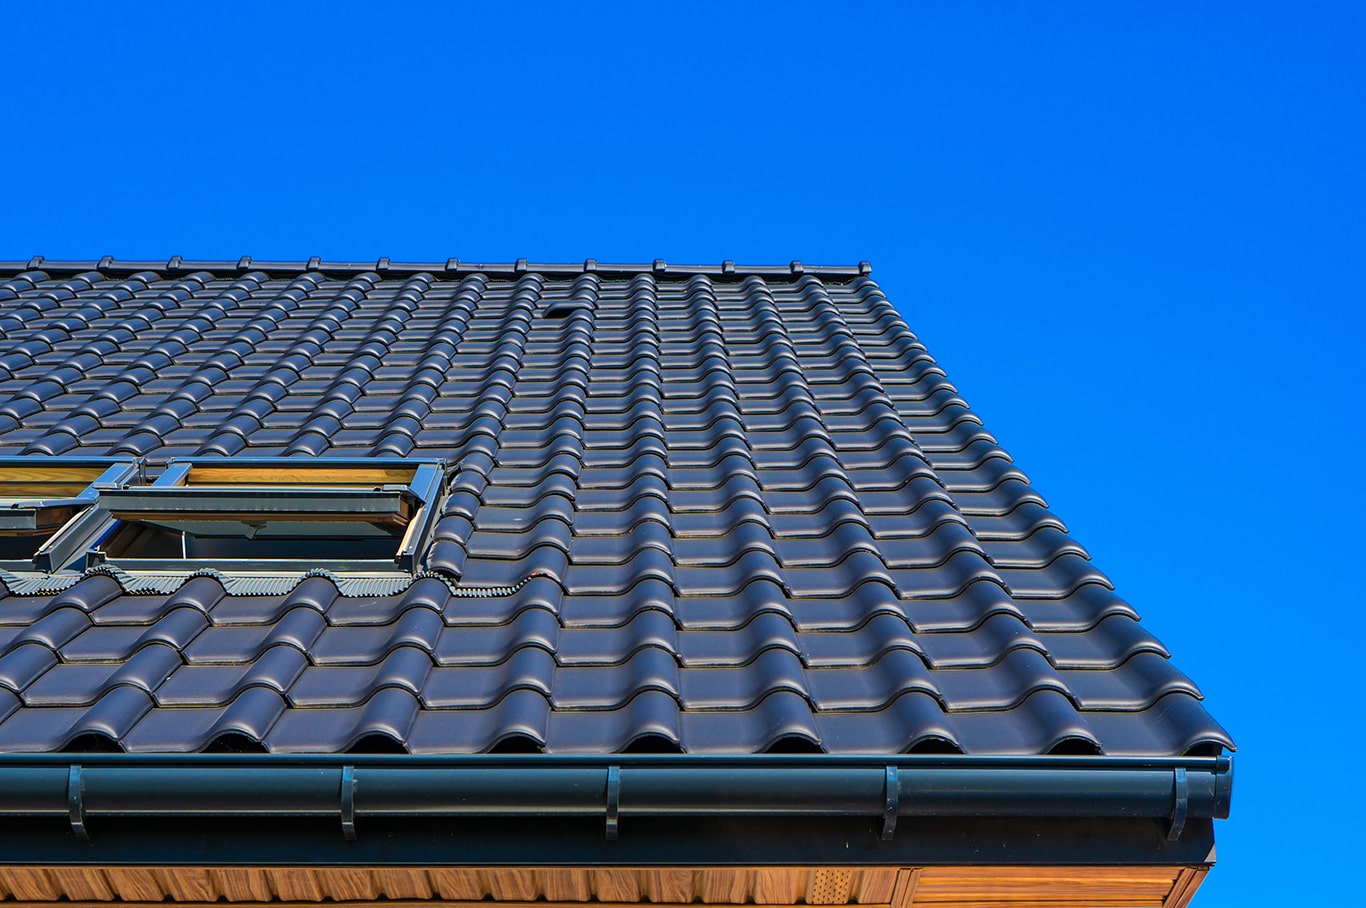 giải pháp chống nóng cho nhà ở - chống nóng cho mái nhà và tường